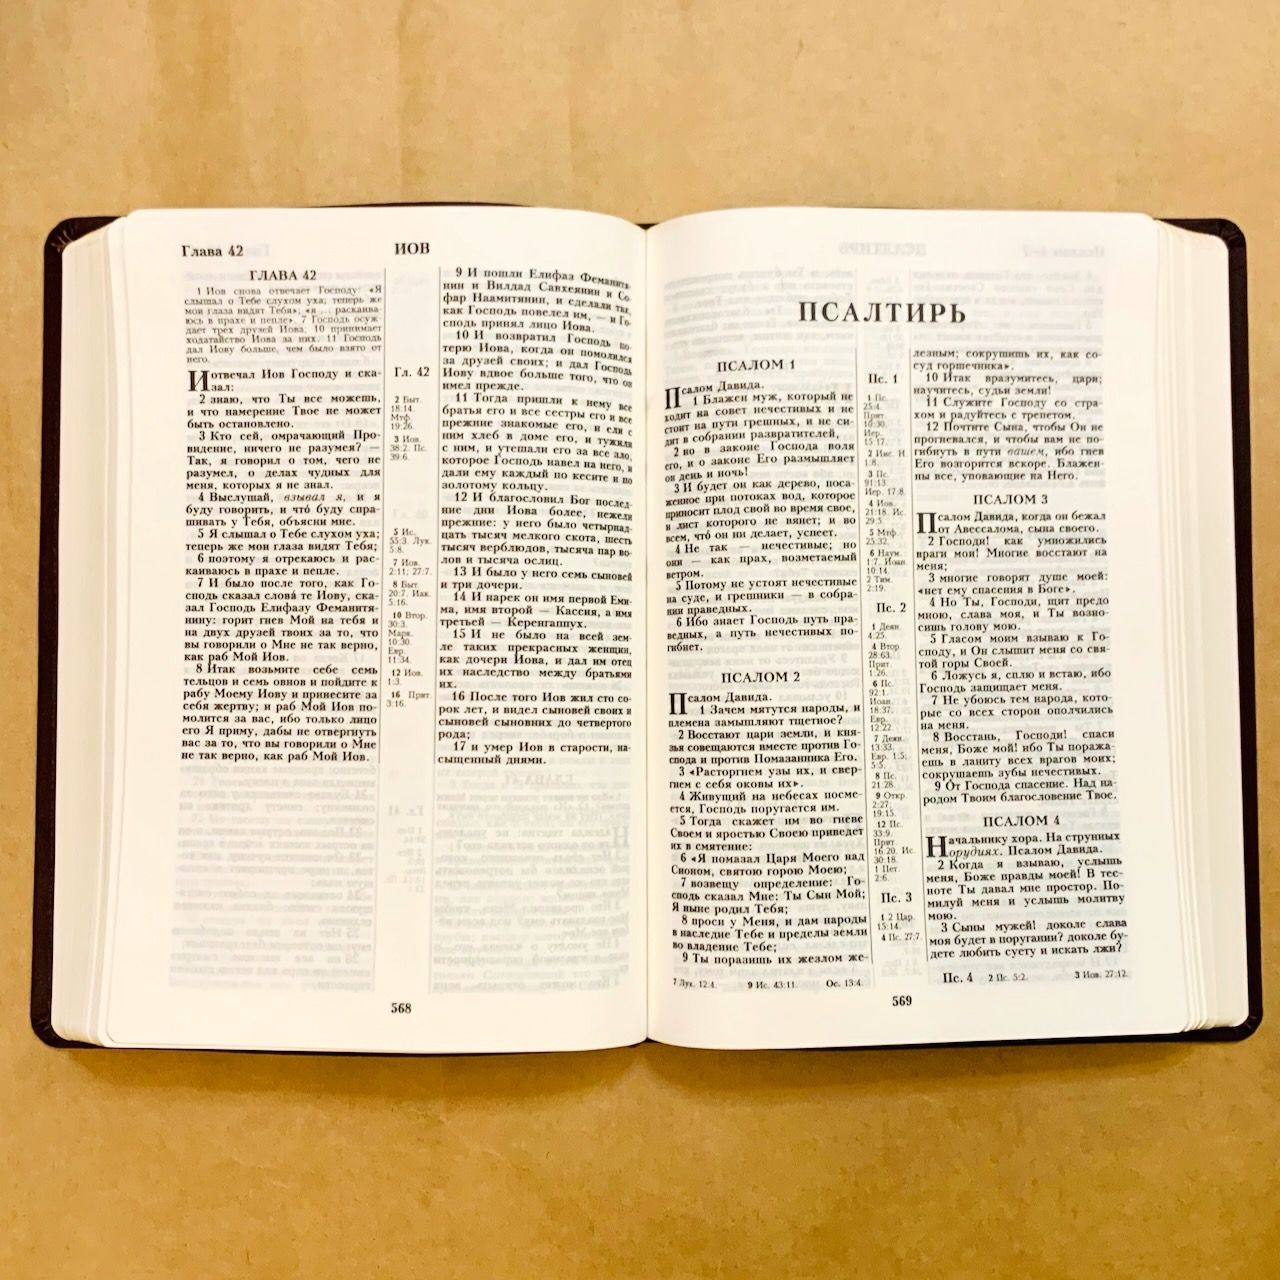 Библия 076 код H2,  дизайн "термо рамка барокко", переплет из искусственной кожи, цвет коричневый с оттенком бордо матовый